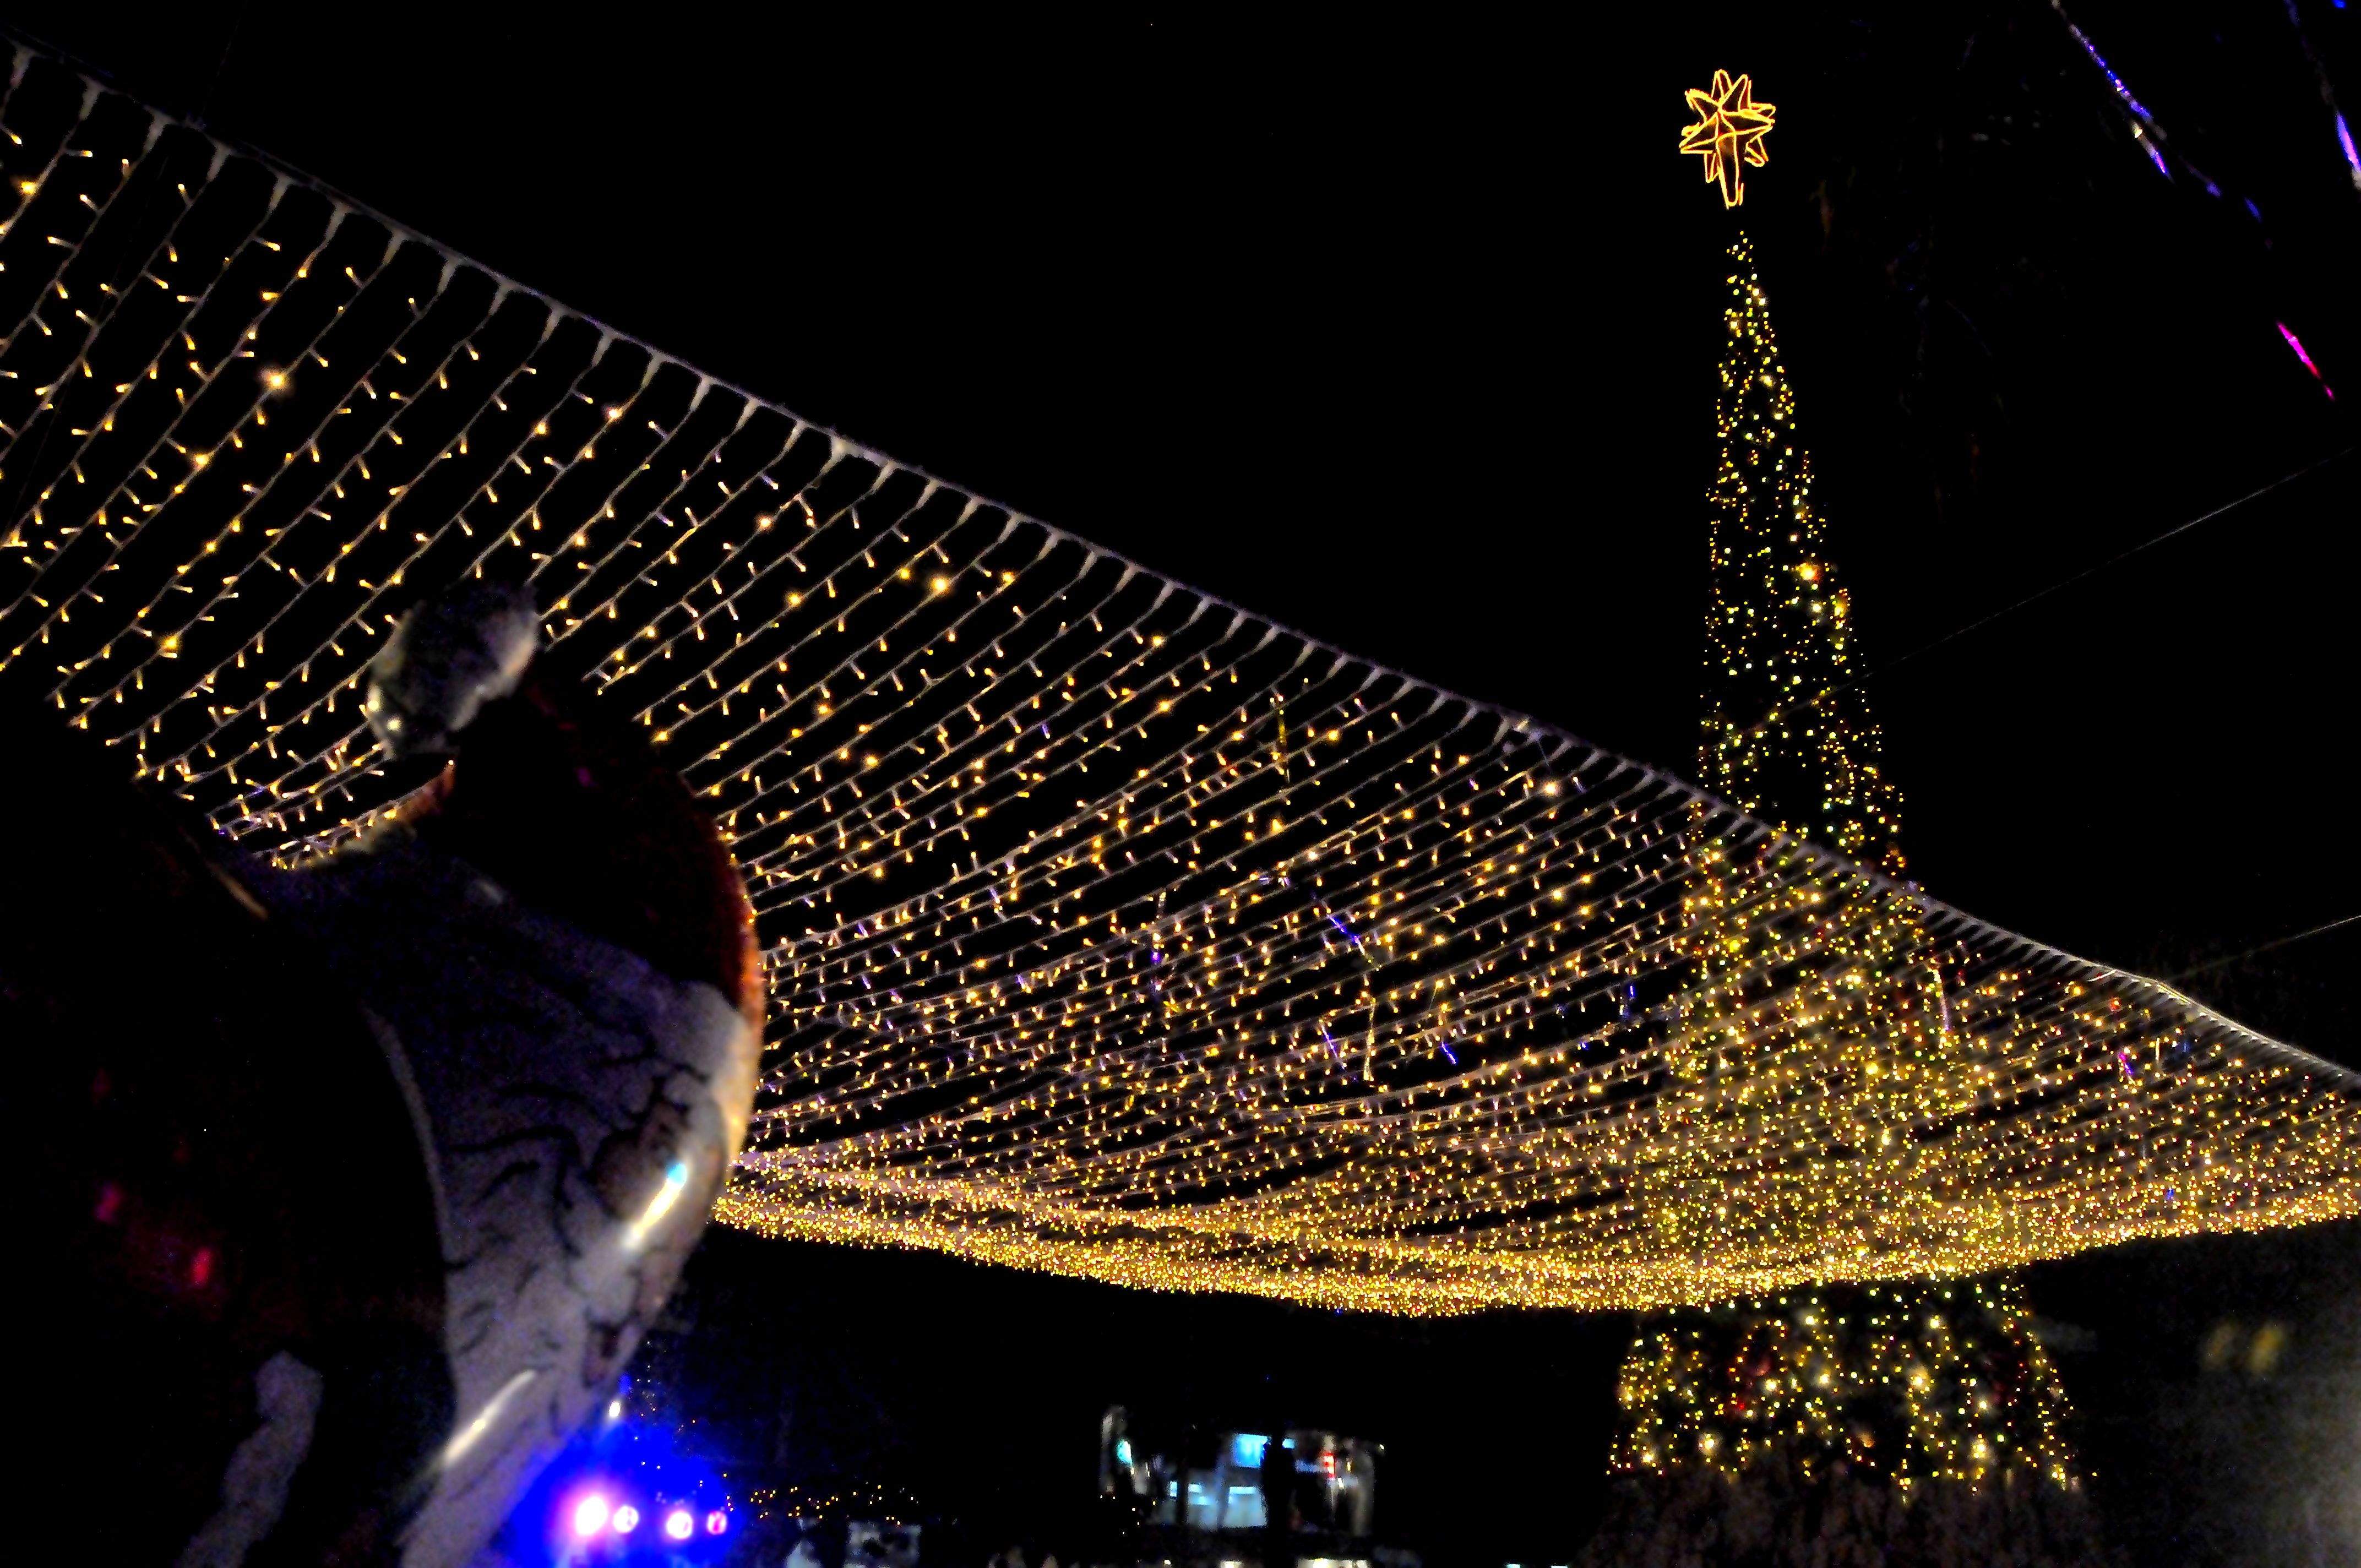 ΑΠΟΚΑΛΥΠΤΙΚΟ: 2 Δεκεμβίου η Χριστουγεννιάτικη φωταγώγηση της Λάρνακας